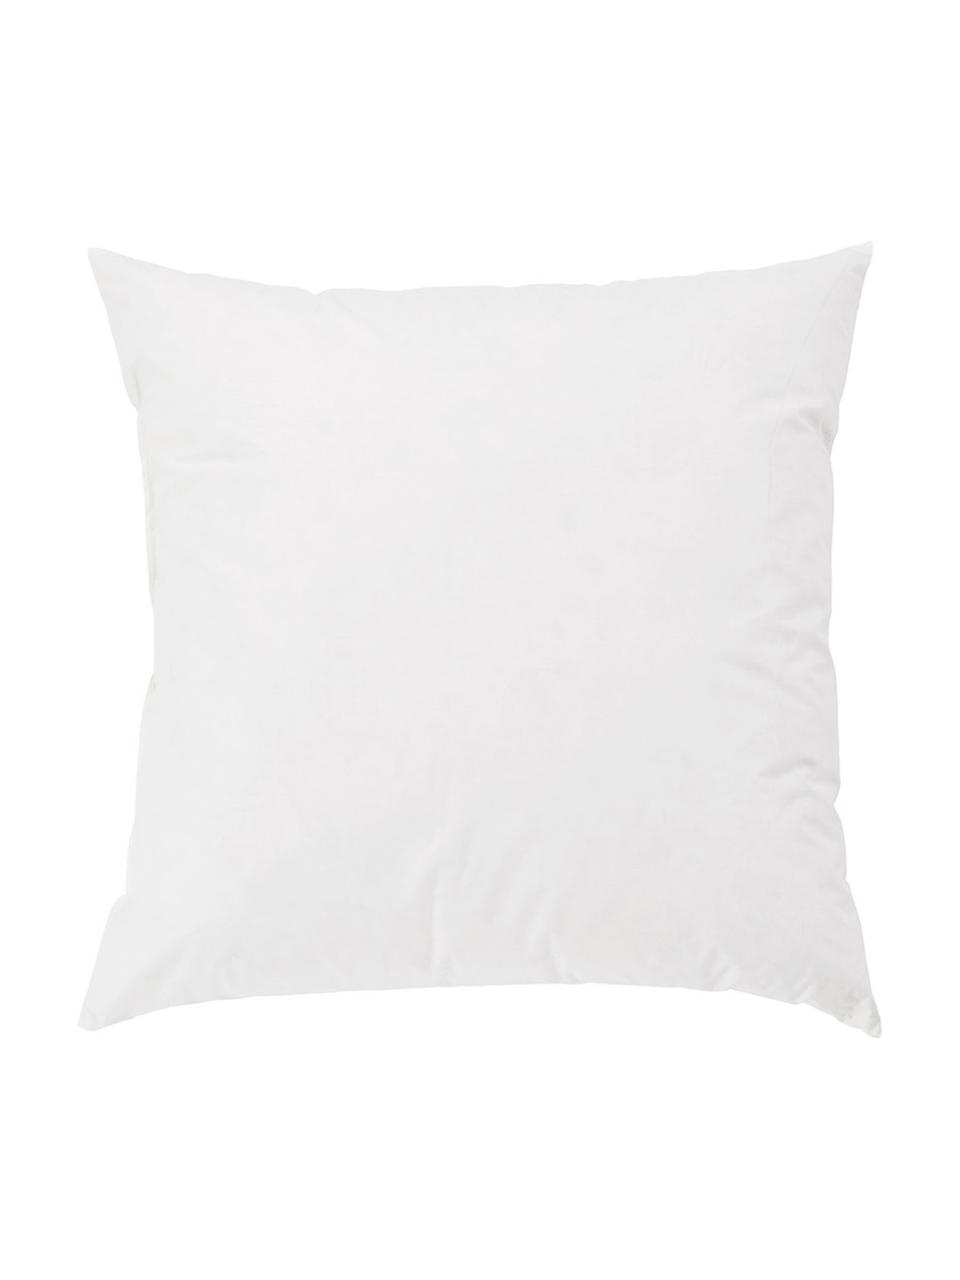 Imbottitura cuscino in piumino/piuma Premium, 60 x 60, Rivestimento: twill fine, 100% cotone s, Bianco, Larg. 60 x Lung. 60 cm